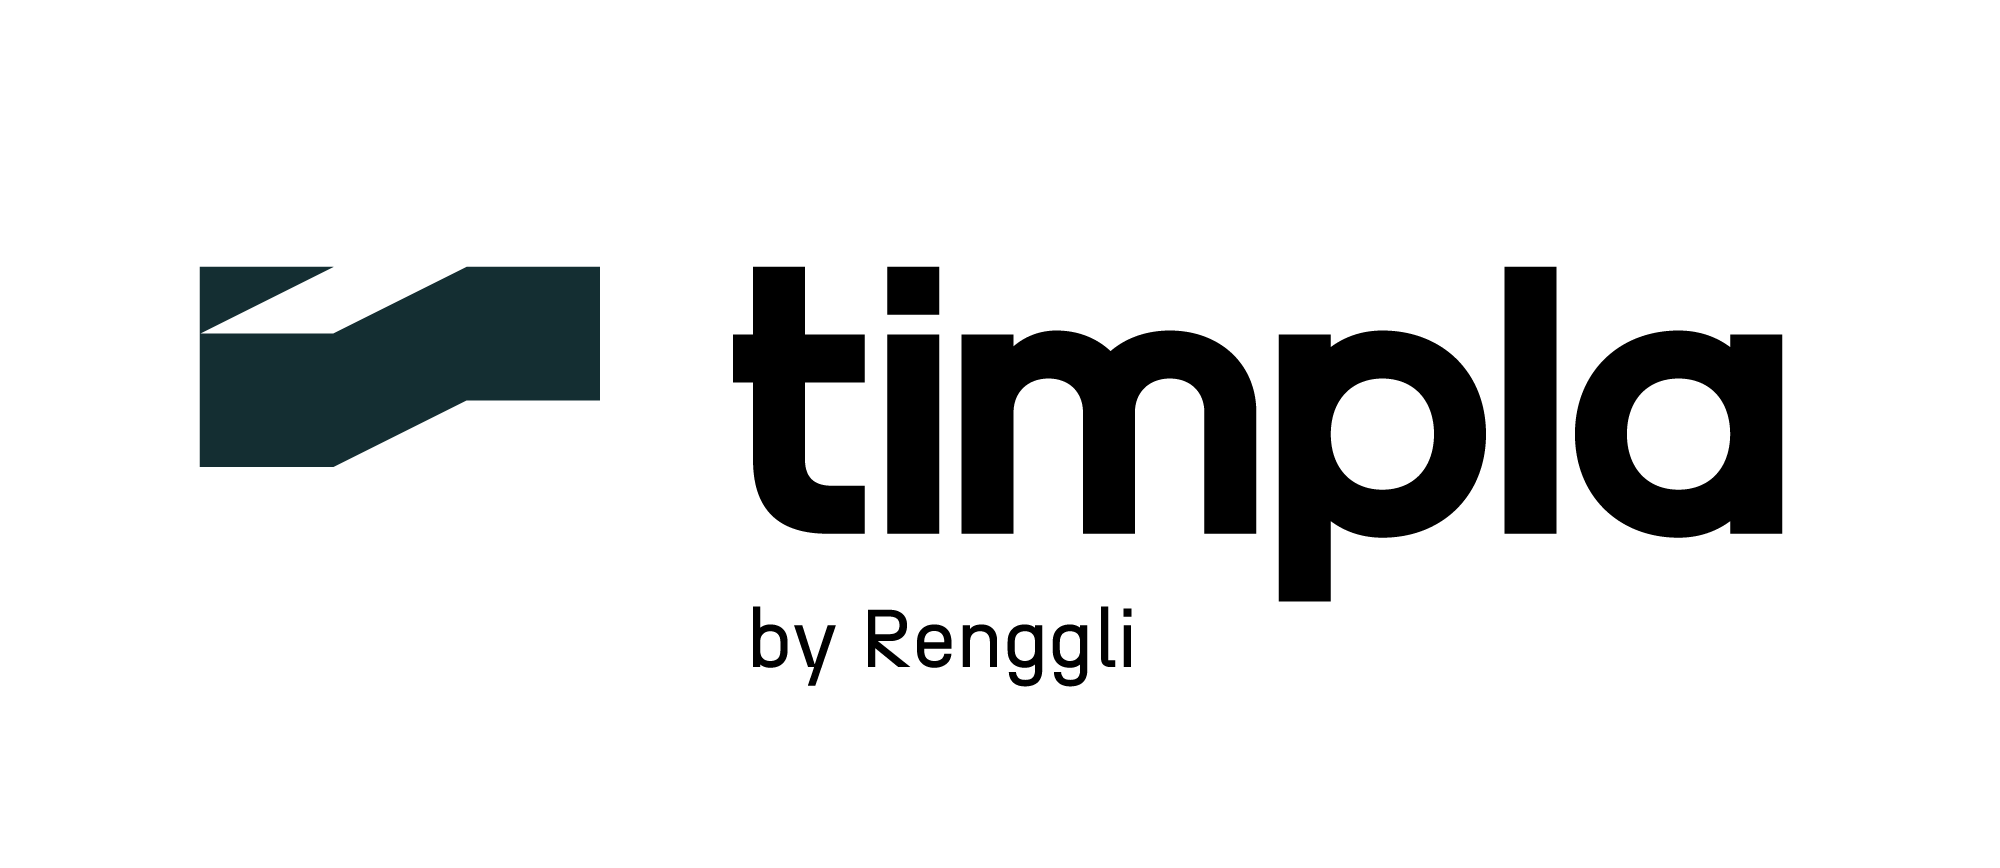 timpla by Renggli-Logo